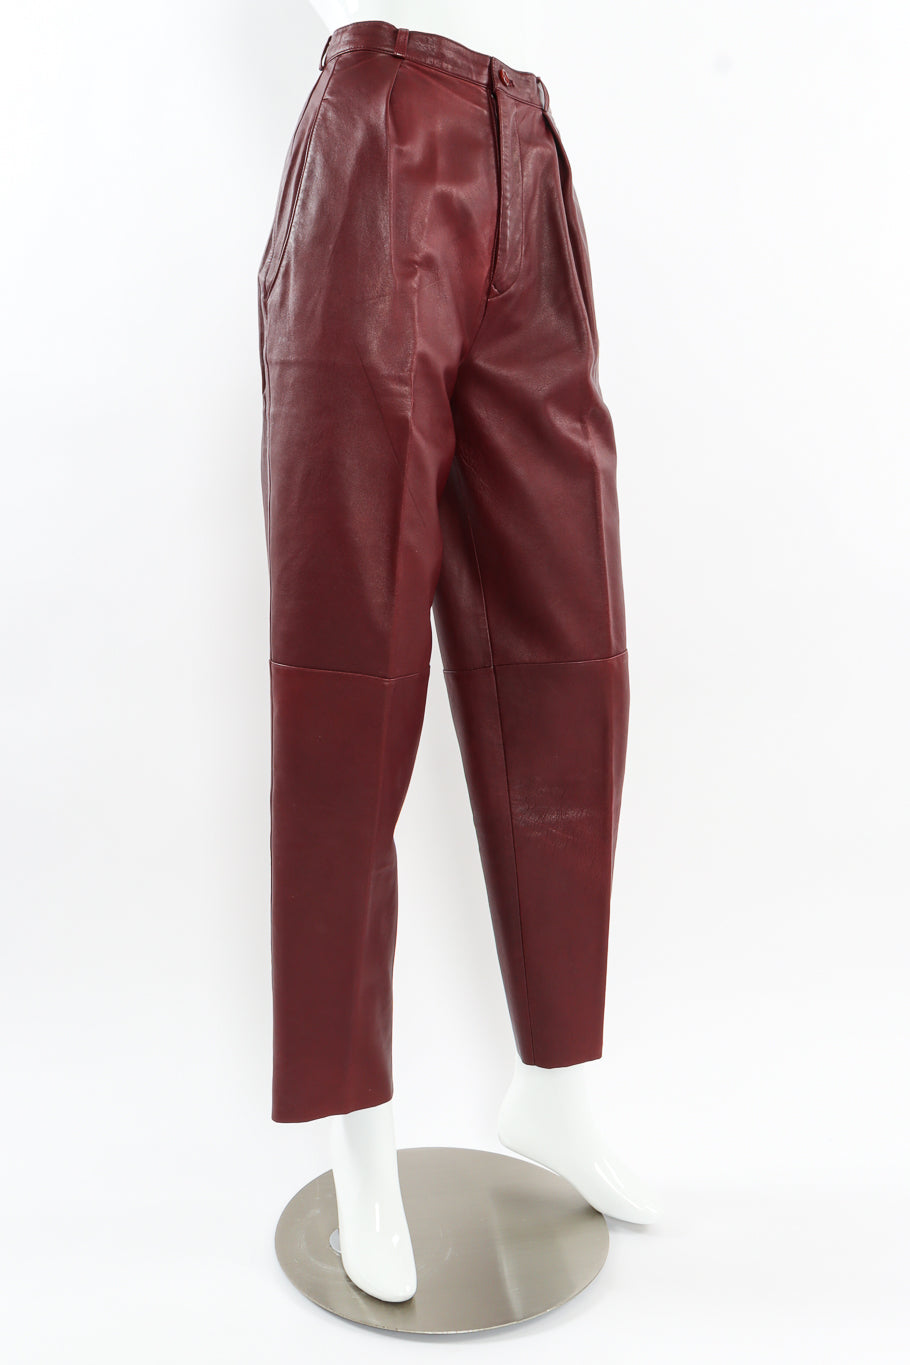 Vintage Calvin Klein Leather Shirt & Pant Set mannequin pant front angle @ Recess LA